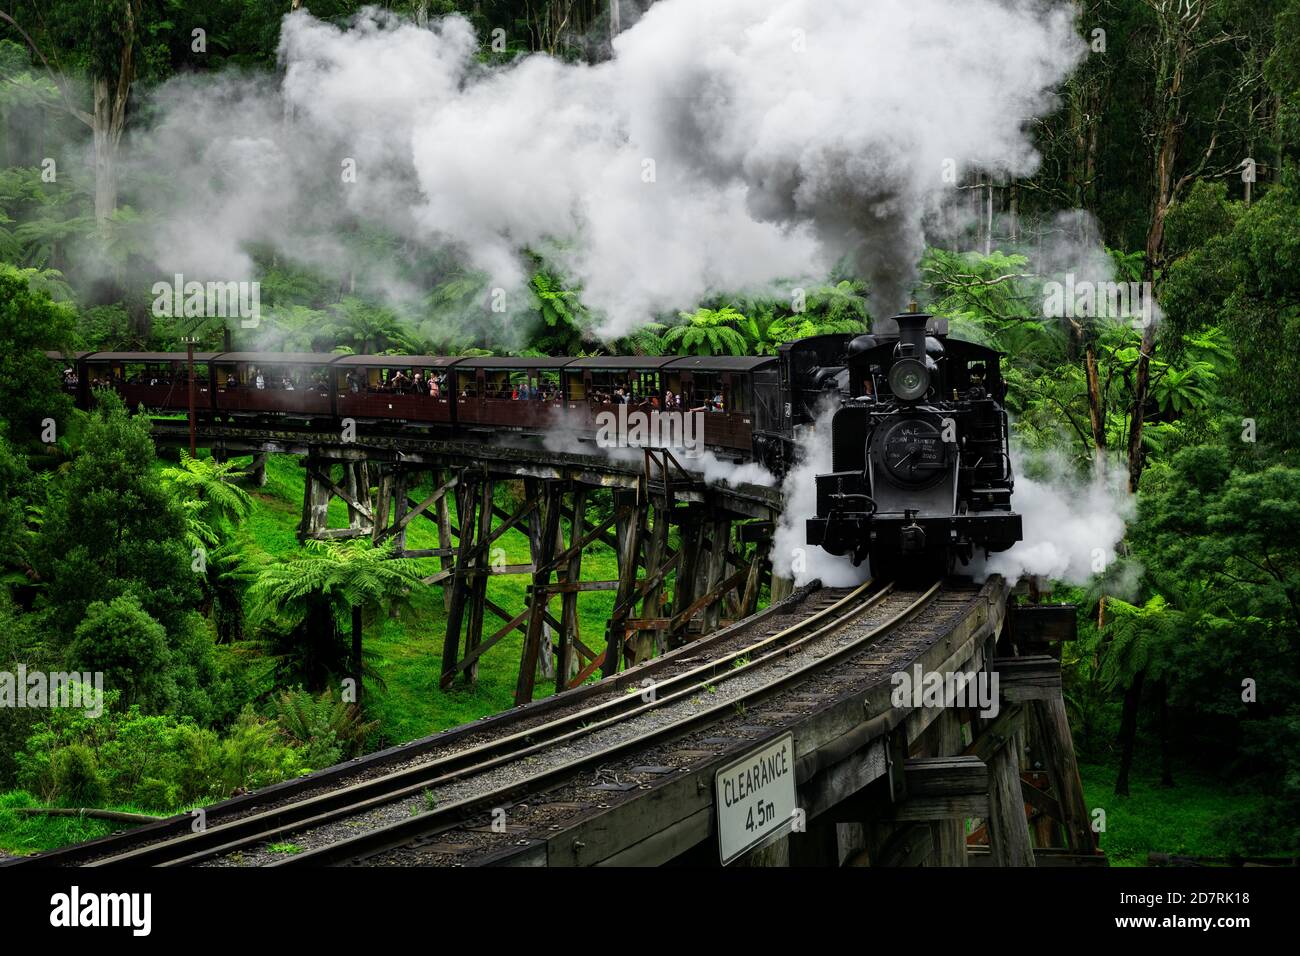 Il famoso ponte a traliccio del treno a vapore Puffing Billy nelle catene montuose di Dandenong. Foto Stock